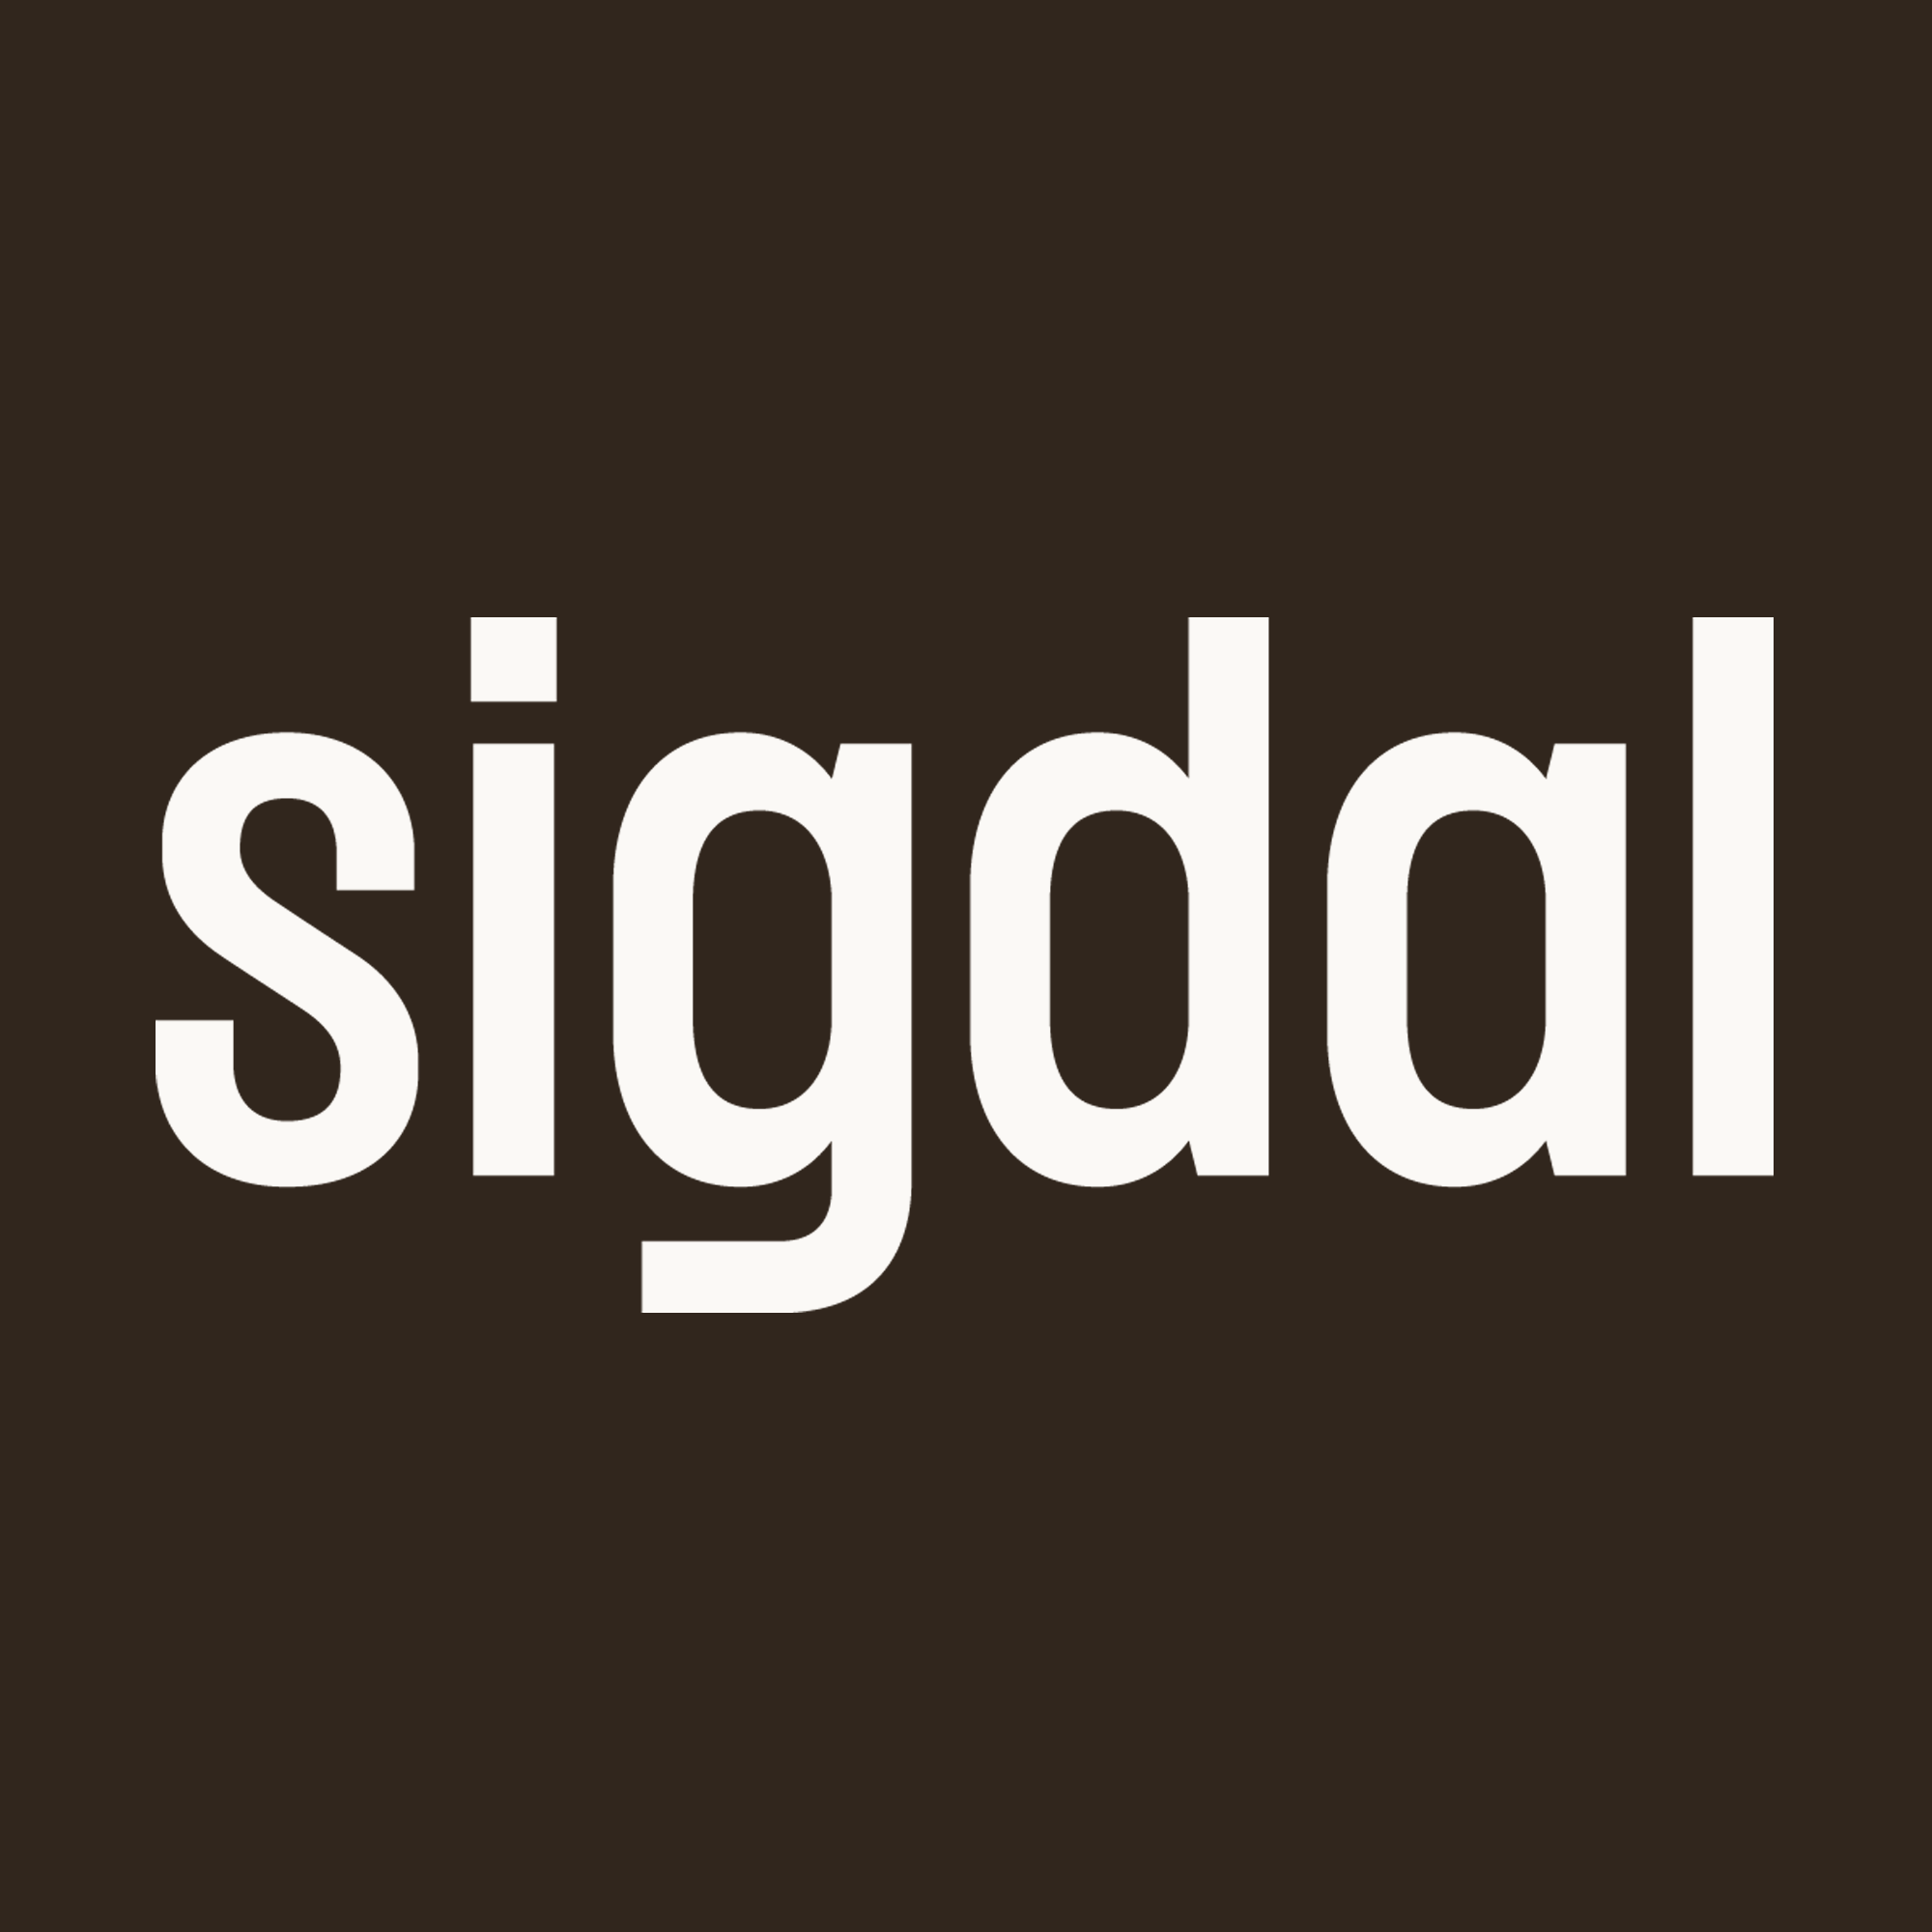 Sigdal